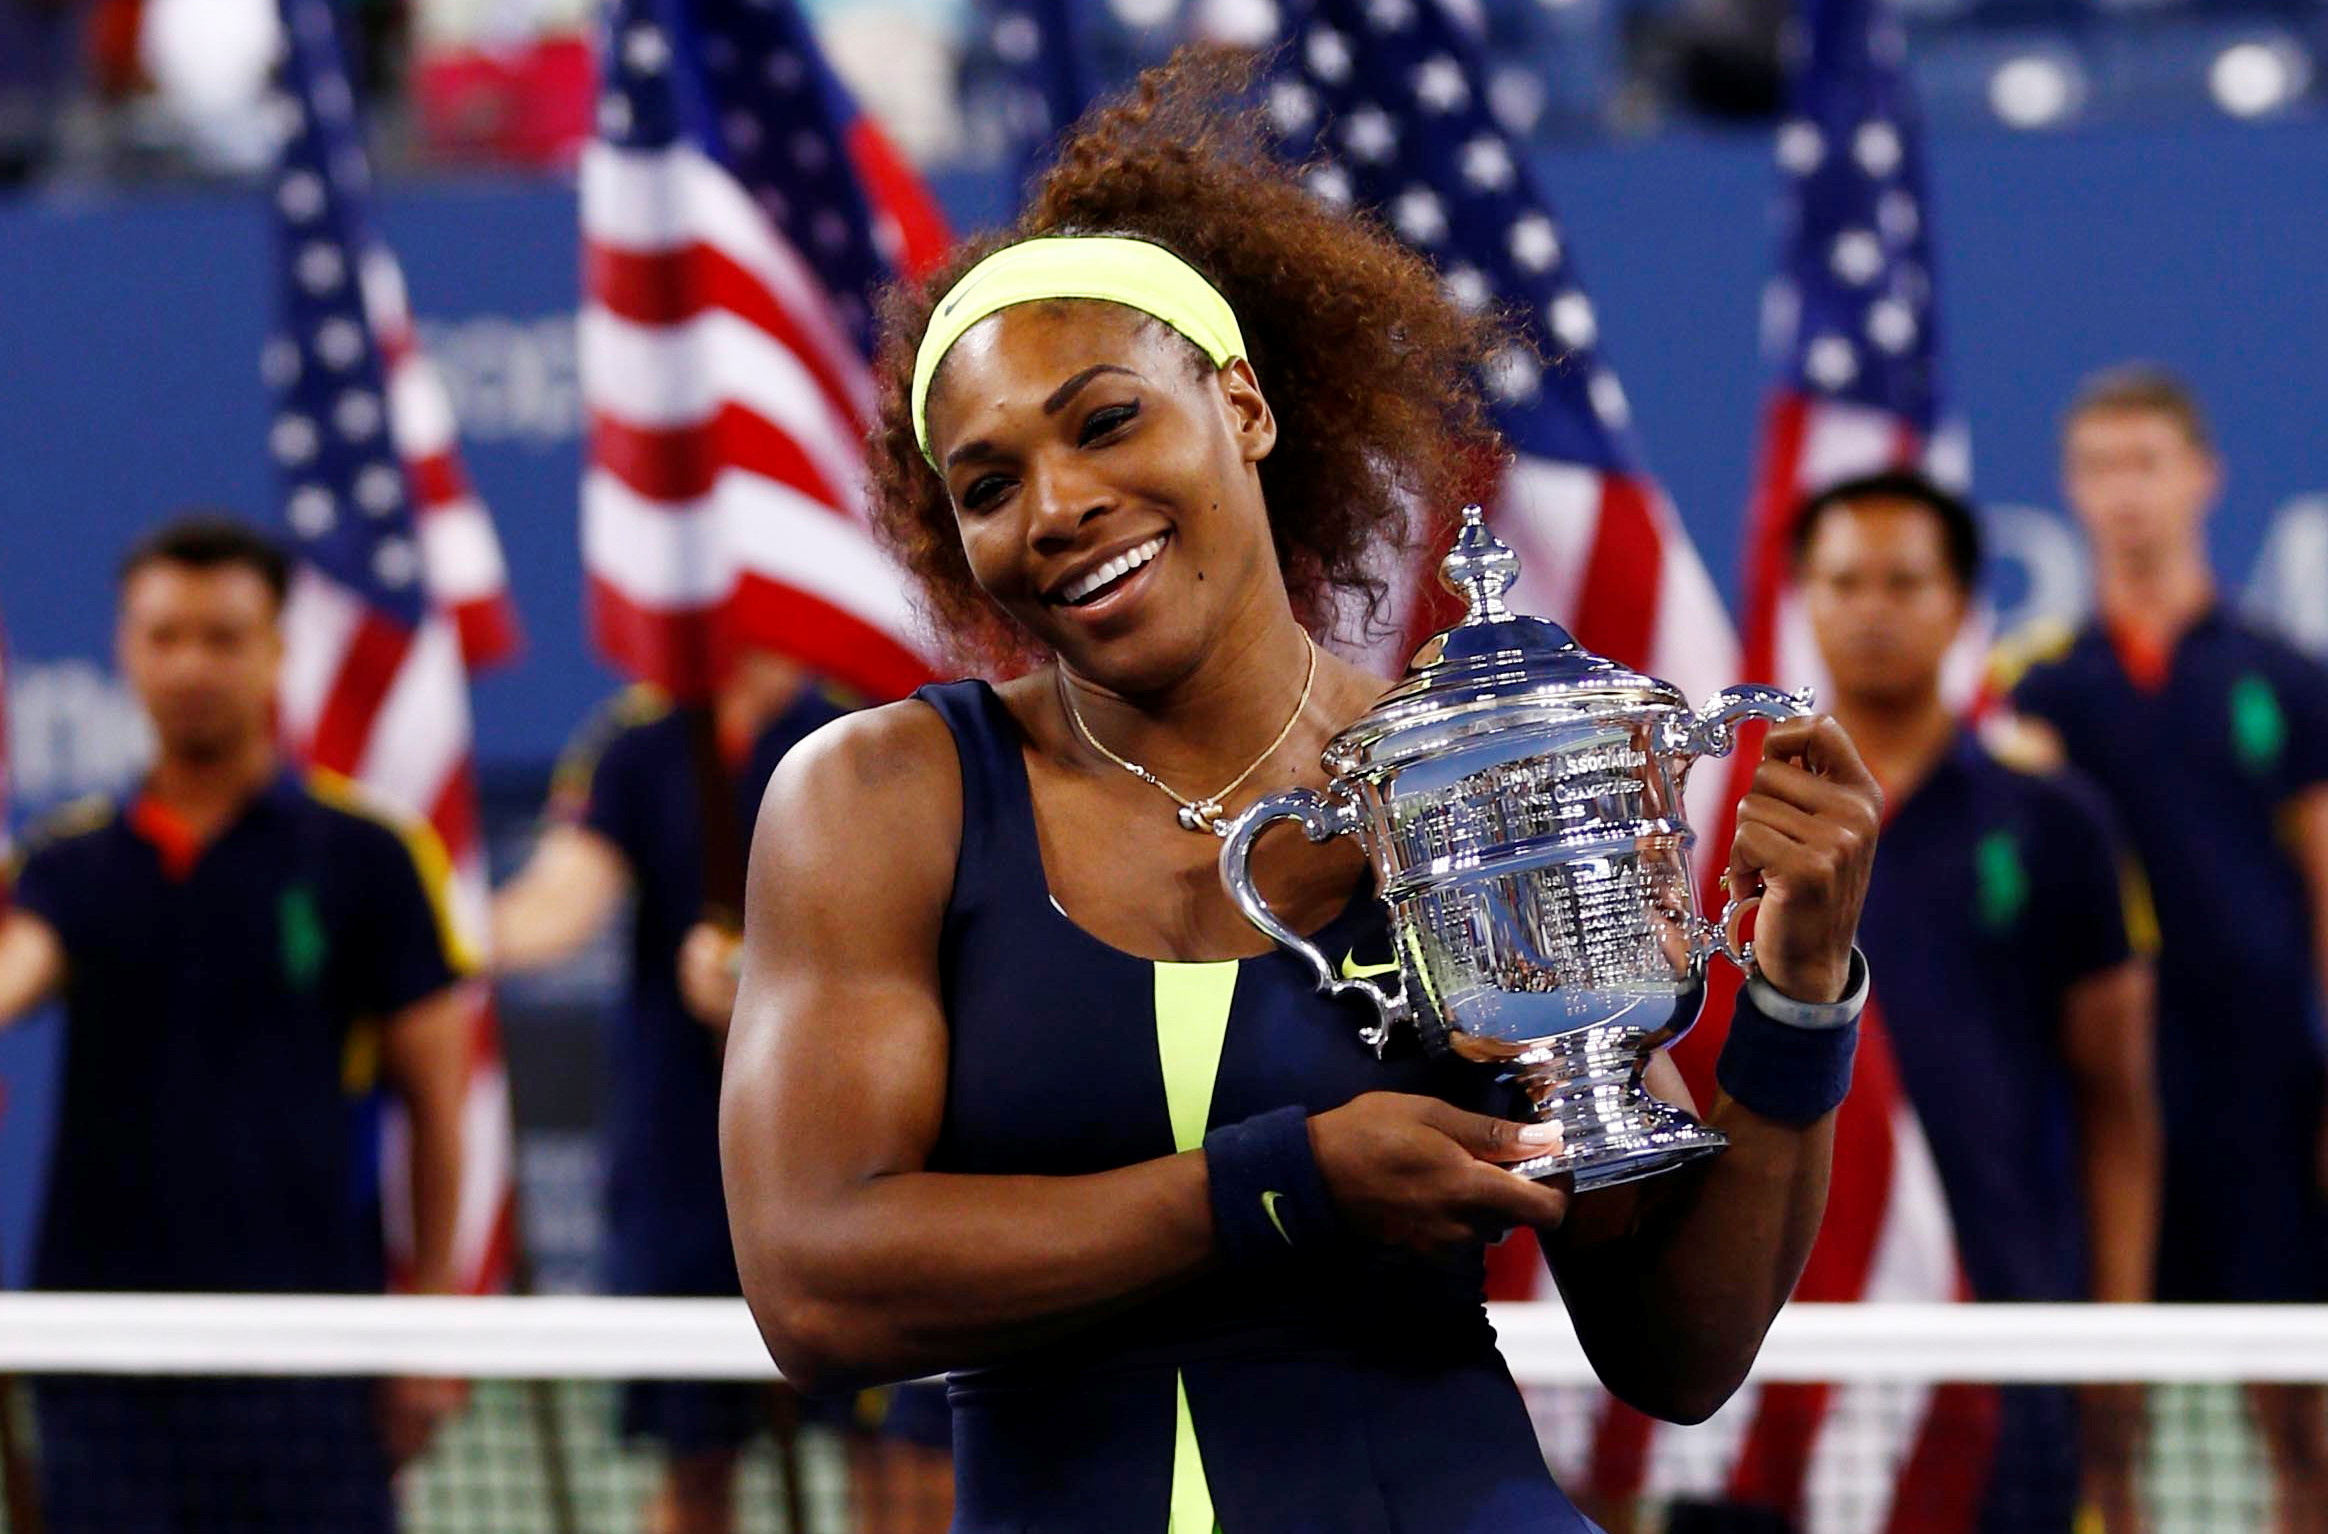 El “tsunami” que provocó Serena Williams en el US Open tras anunciar su retiro: furor por las entradas y reventa récord